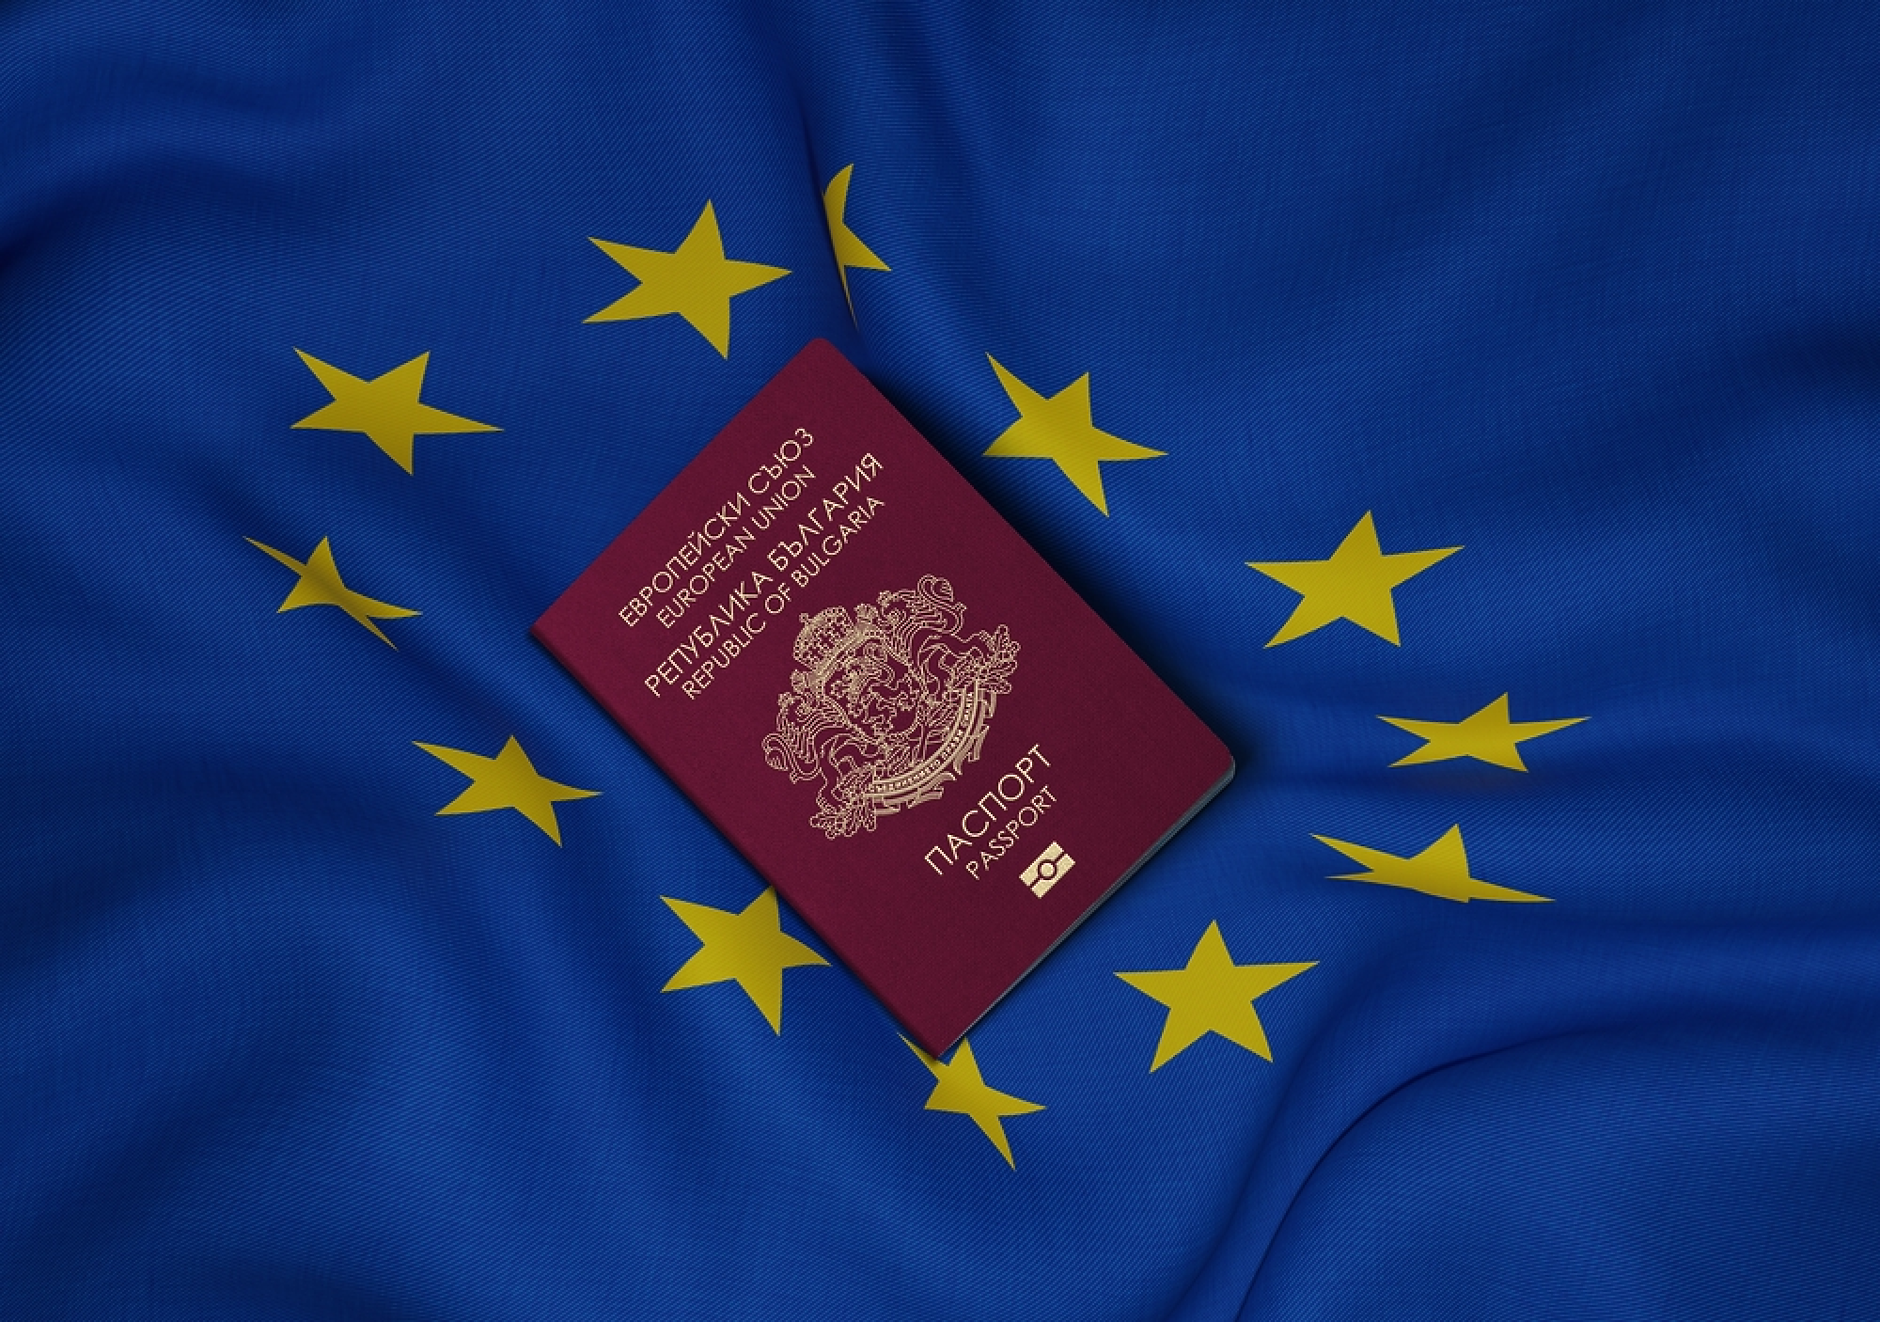 17 души с отнето българско гражданство след отмяната на златните паспорти 